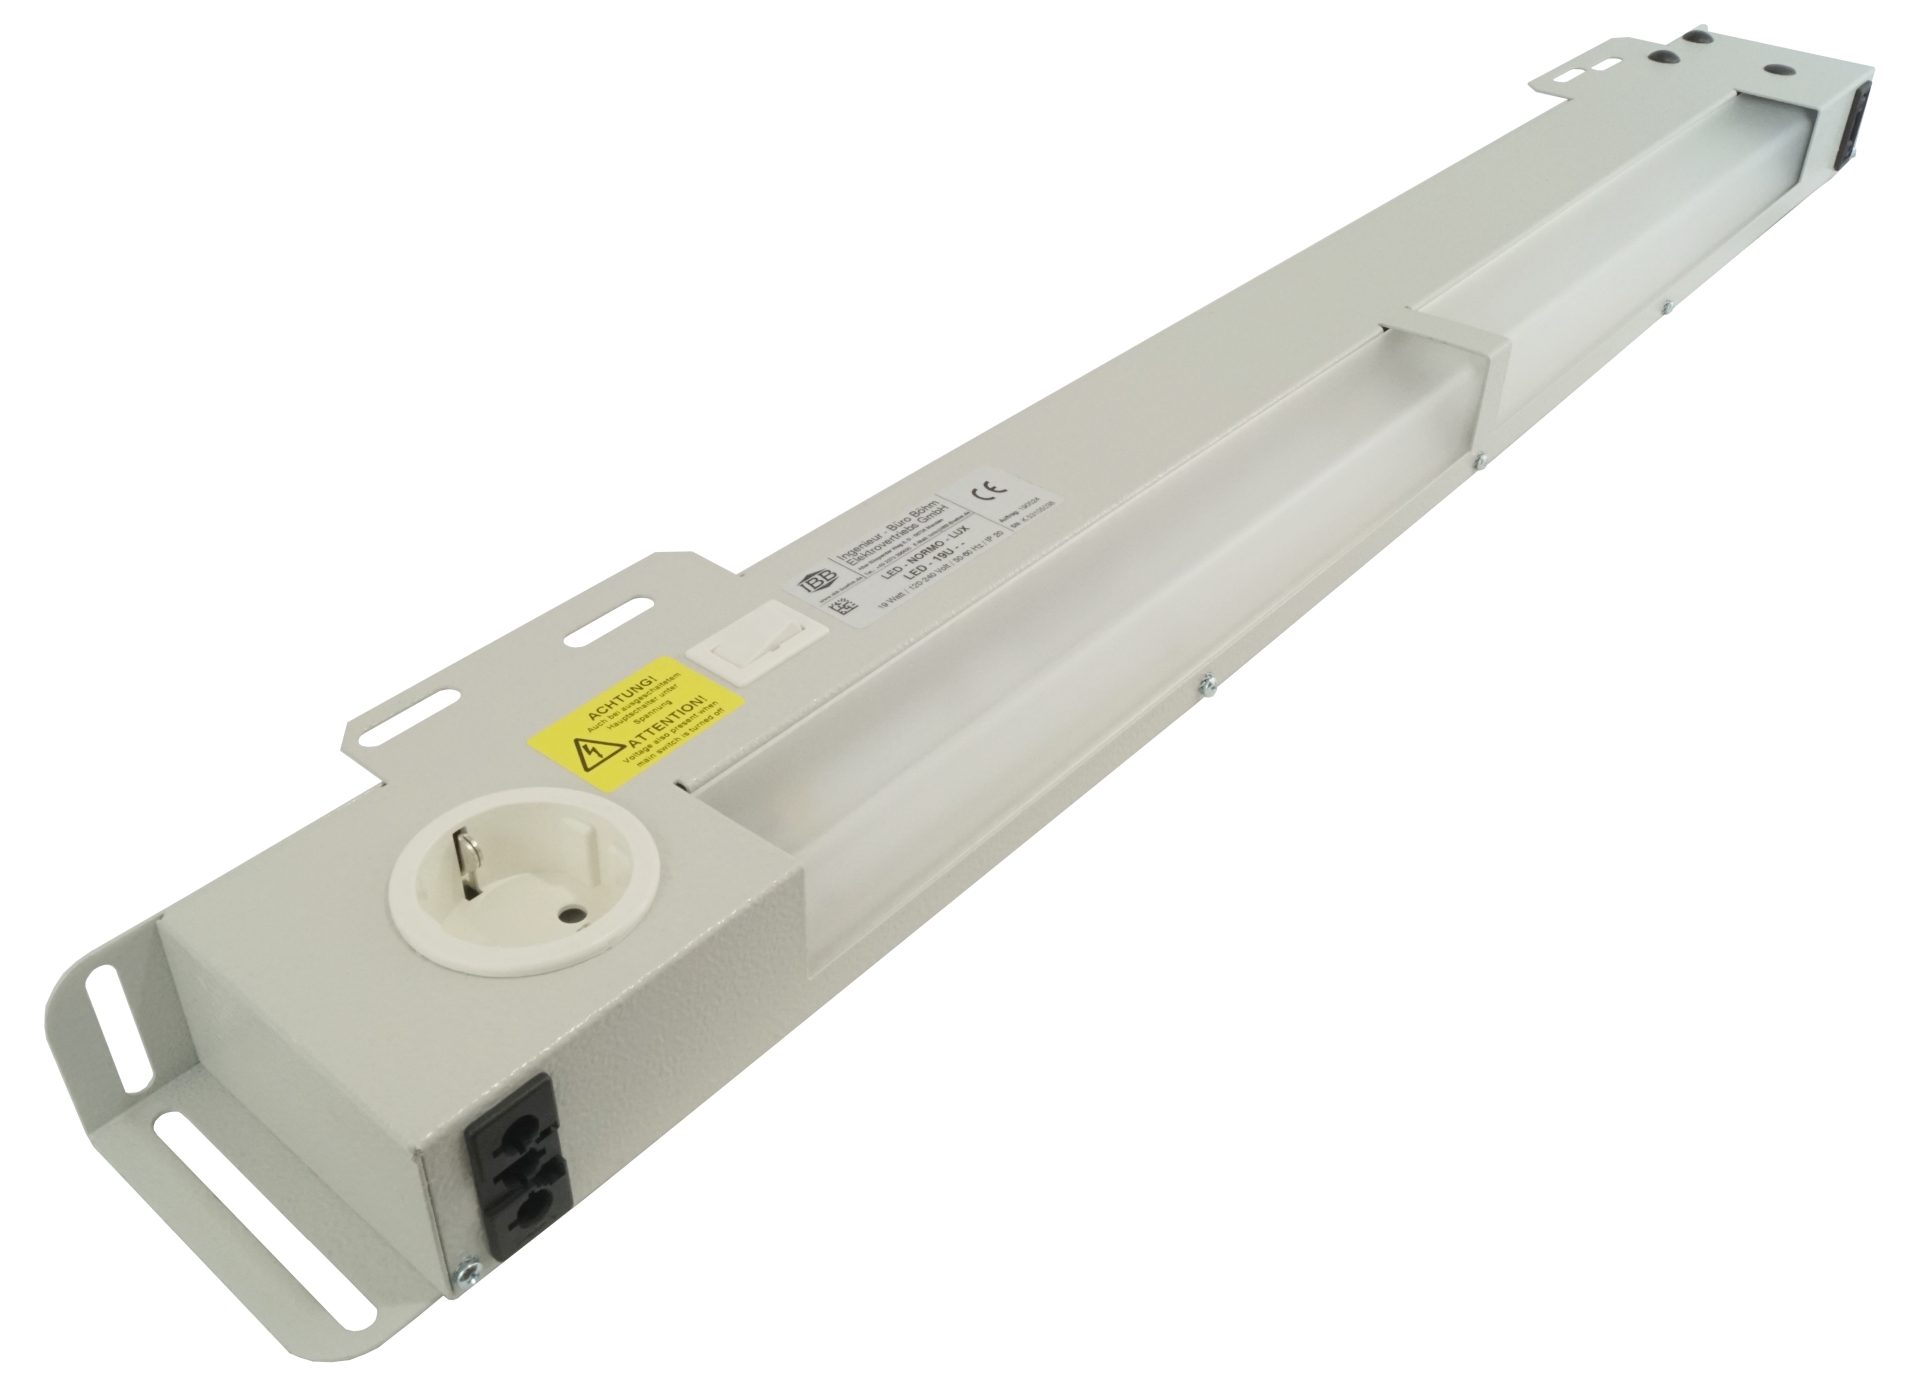 Abbildung LED Schaltschrankleuchte LED-Normo-Lux 19 Watt, 120-240 Volt/50-60 Hz, Ein-/ Ausschalter | ab 1000mm Schrankbreite